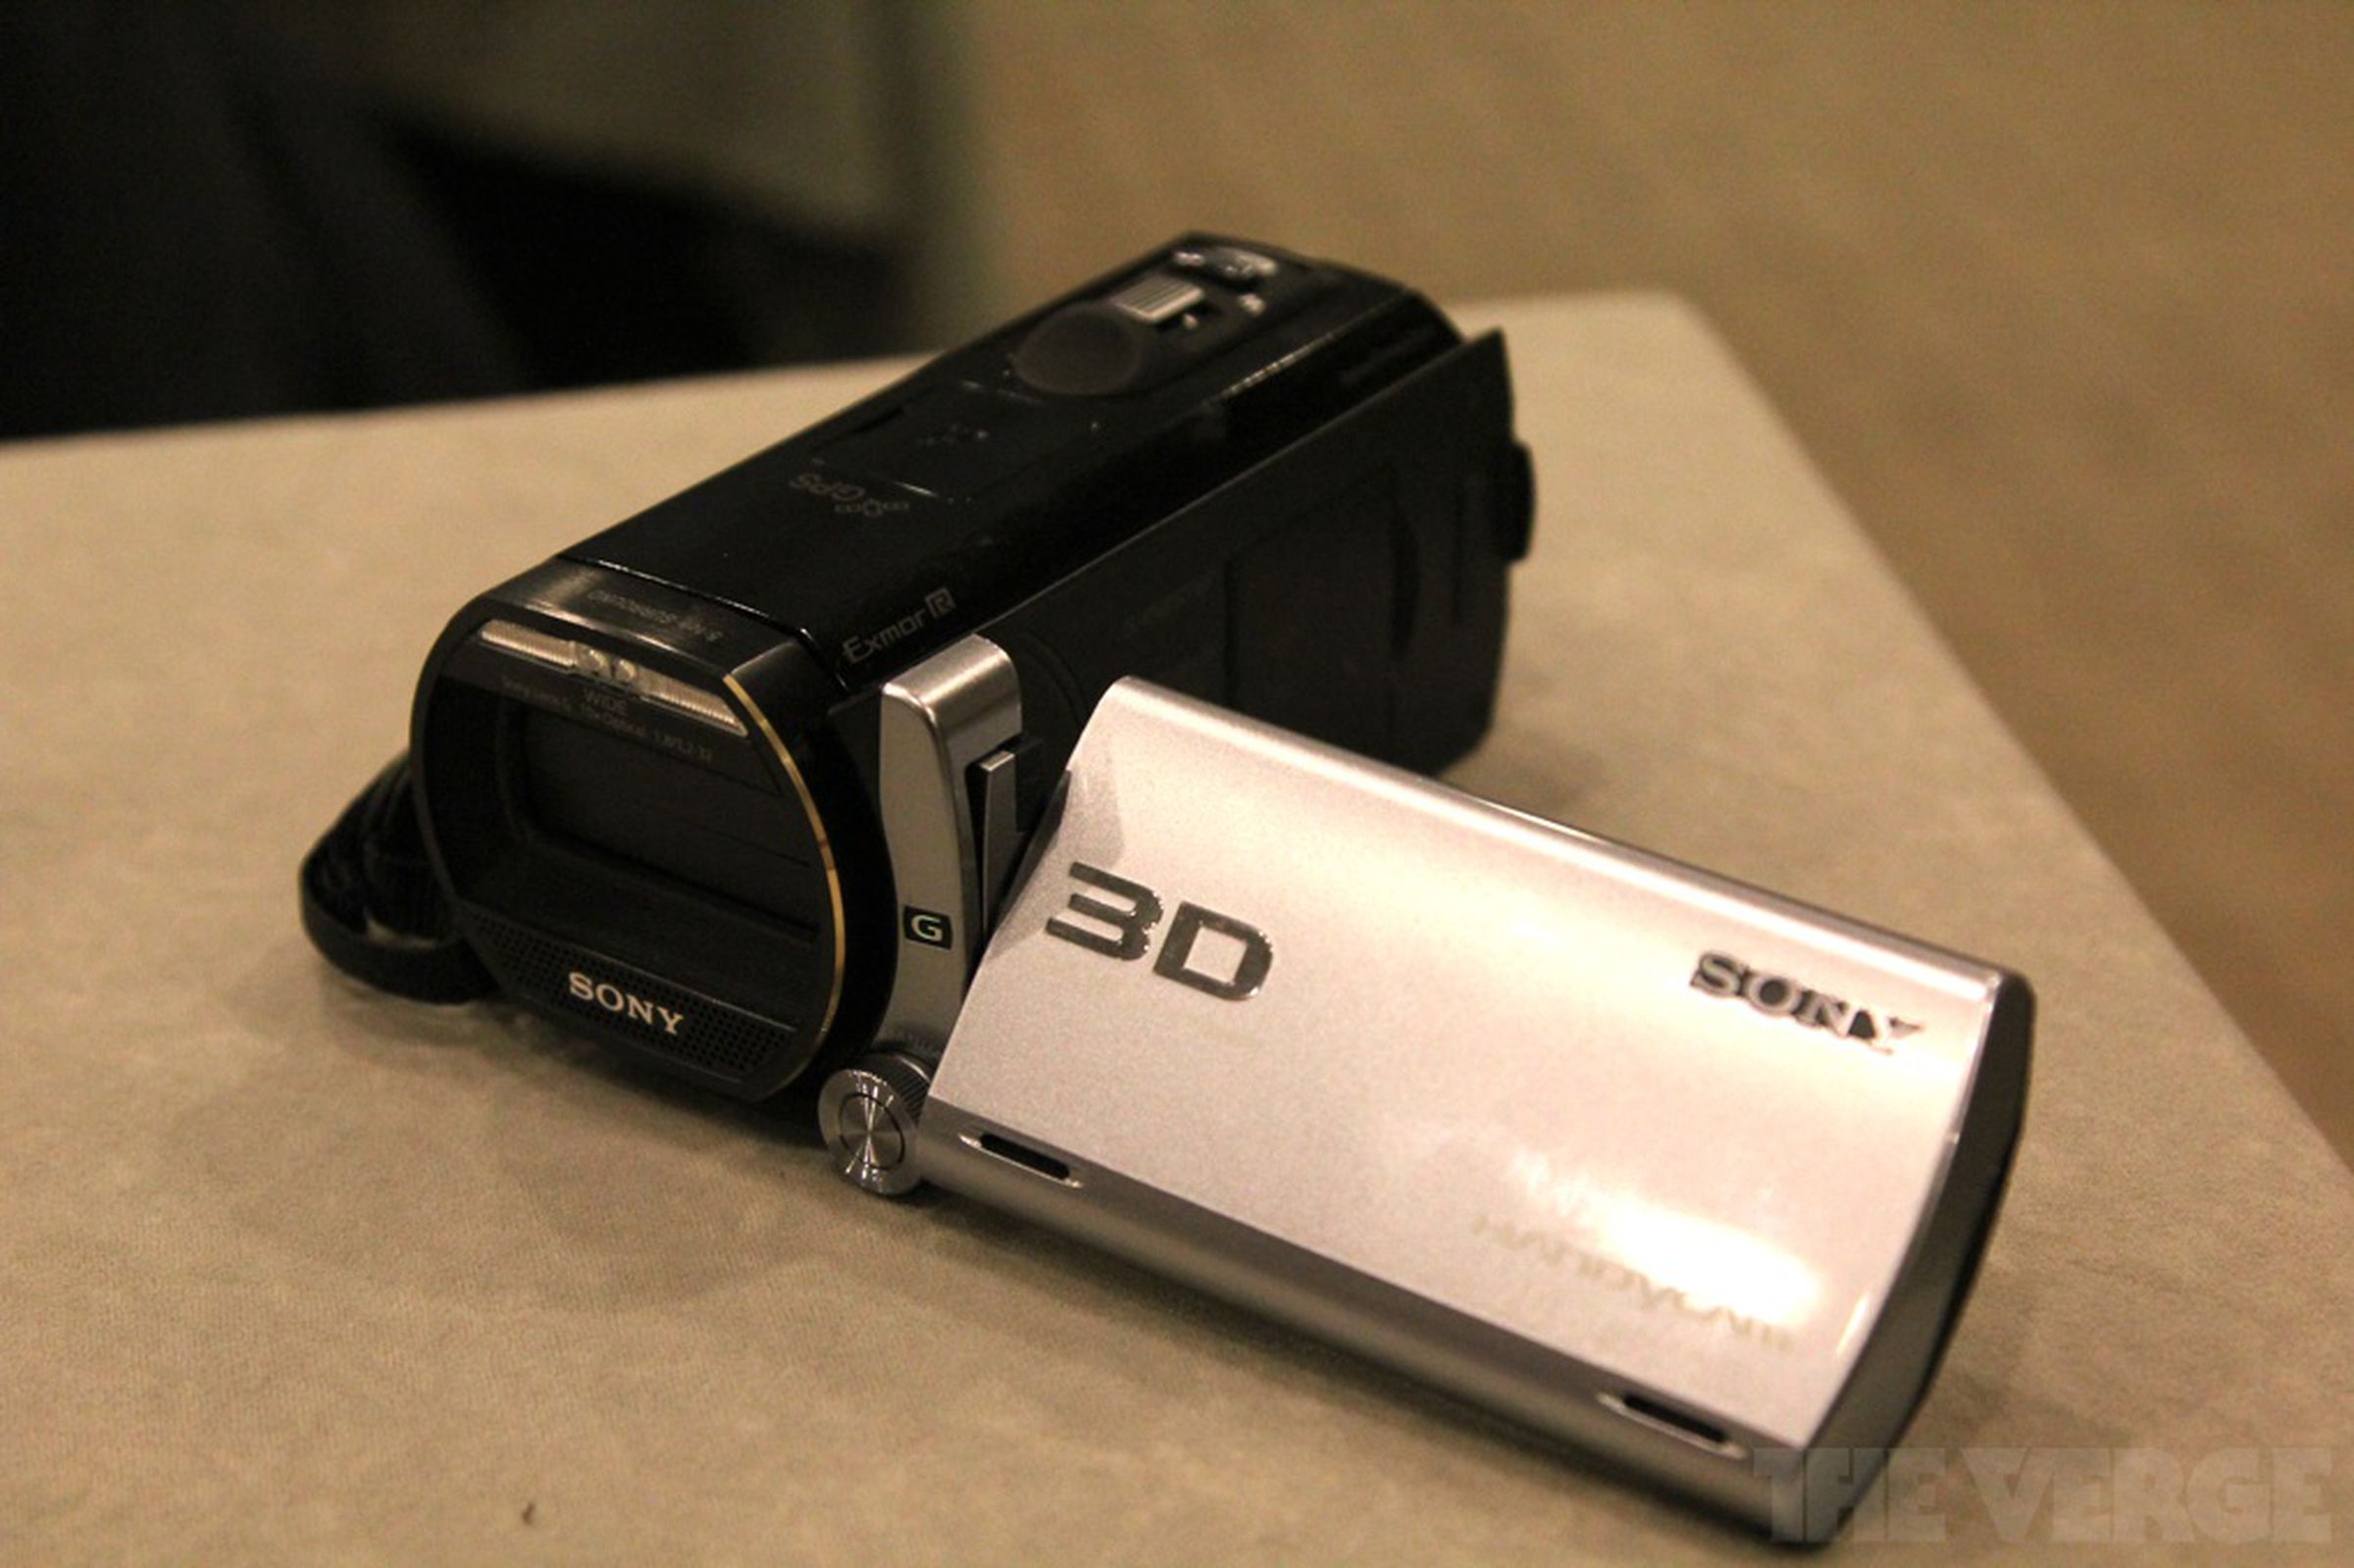 Sony HDR-TD20V 3D camcorder hands-on